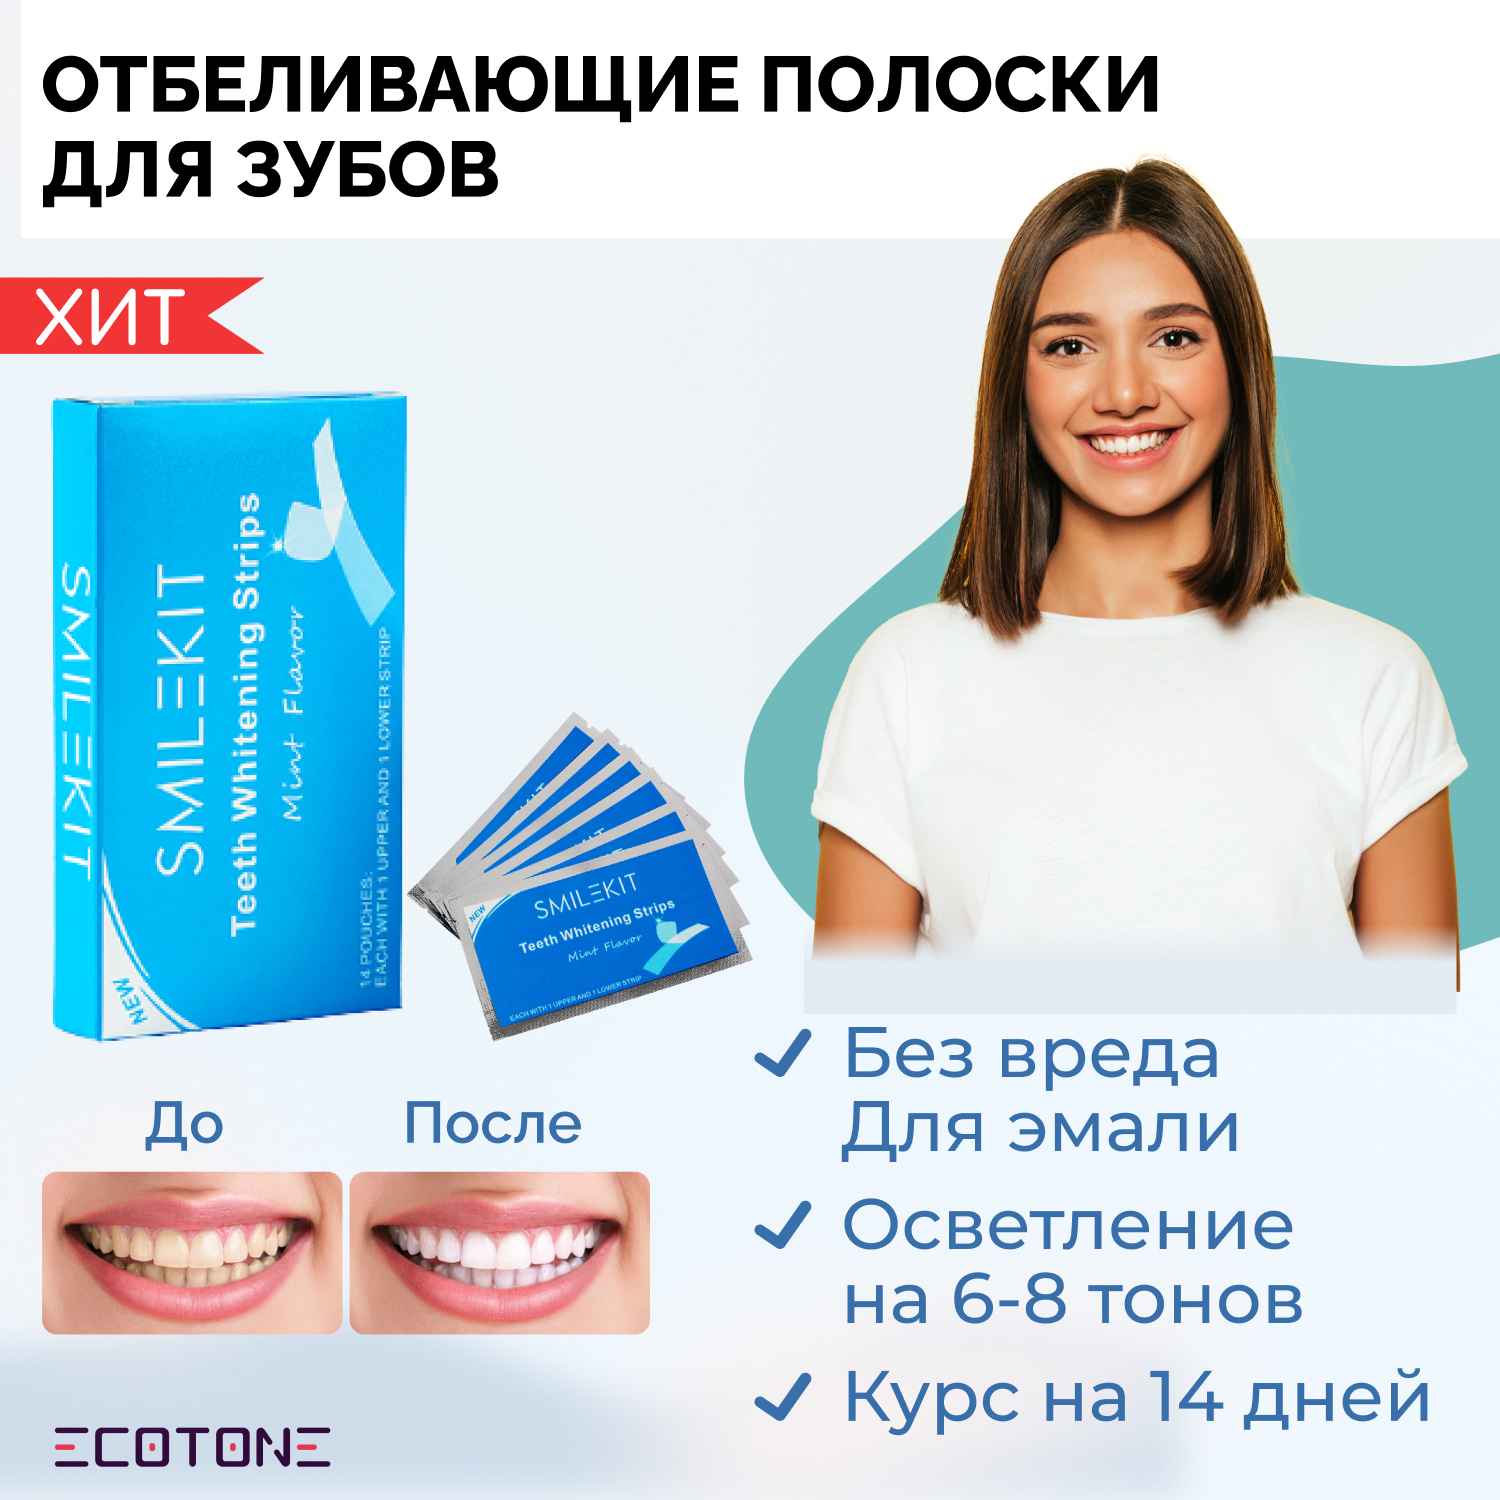 Полоски для зубов Ecotone Smilekit Отбеливающие курс на 14 дней - фото 2